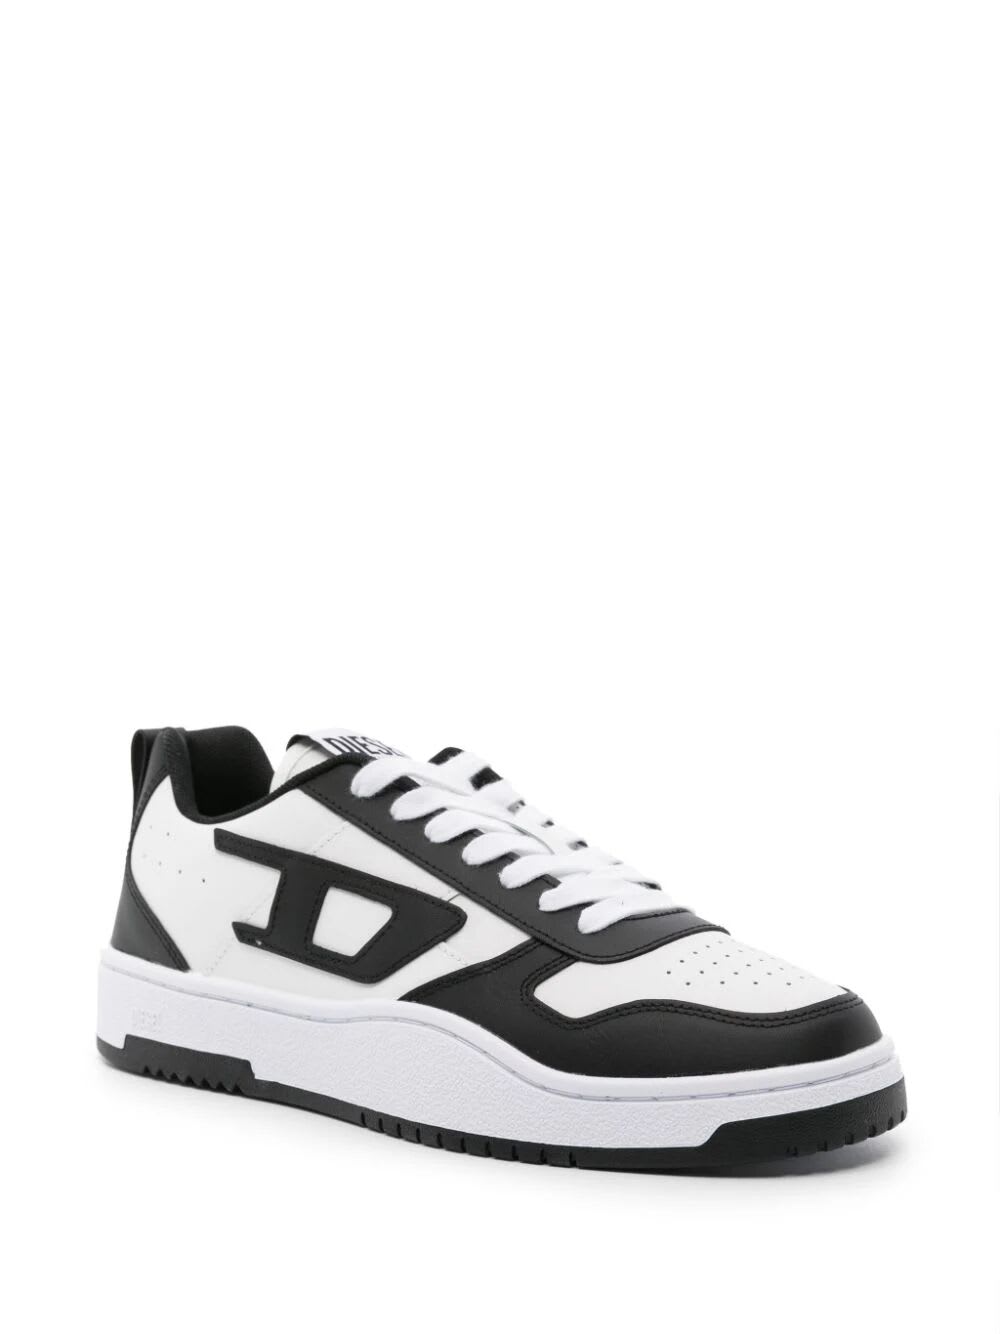 Shop Diesel Ukiyo V2 Low Sneakers In White Black